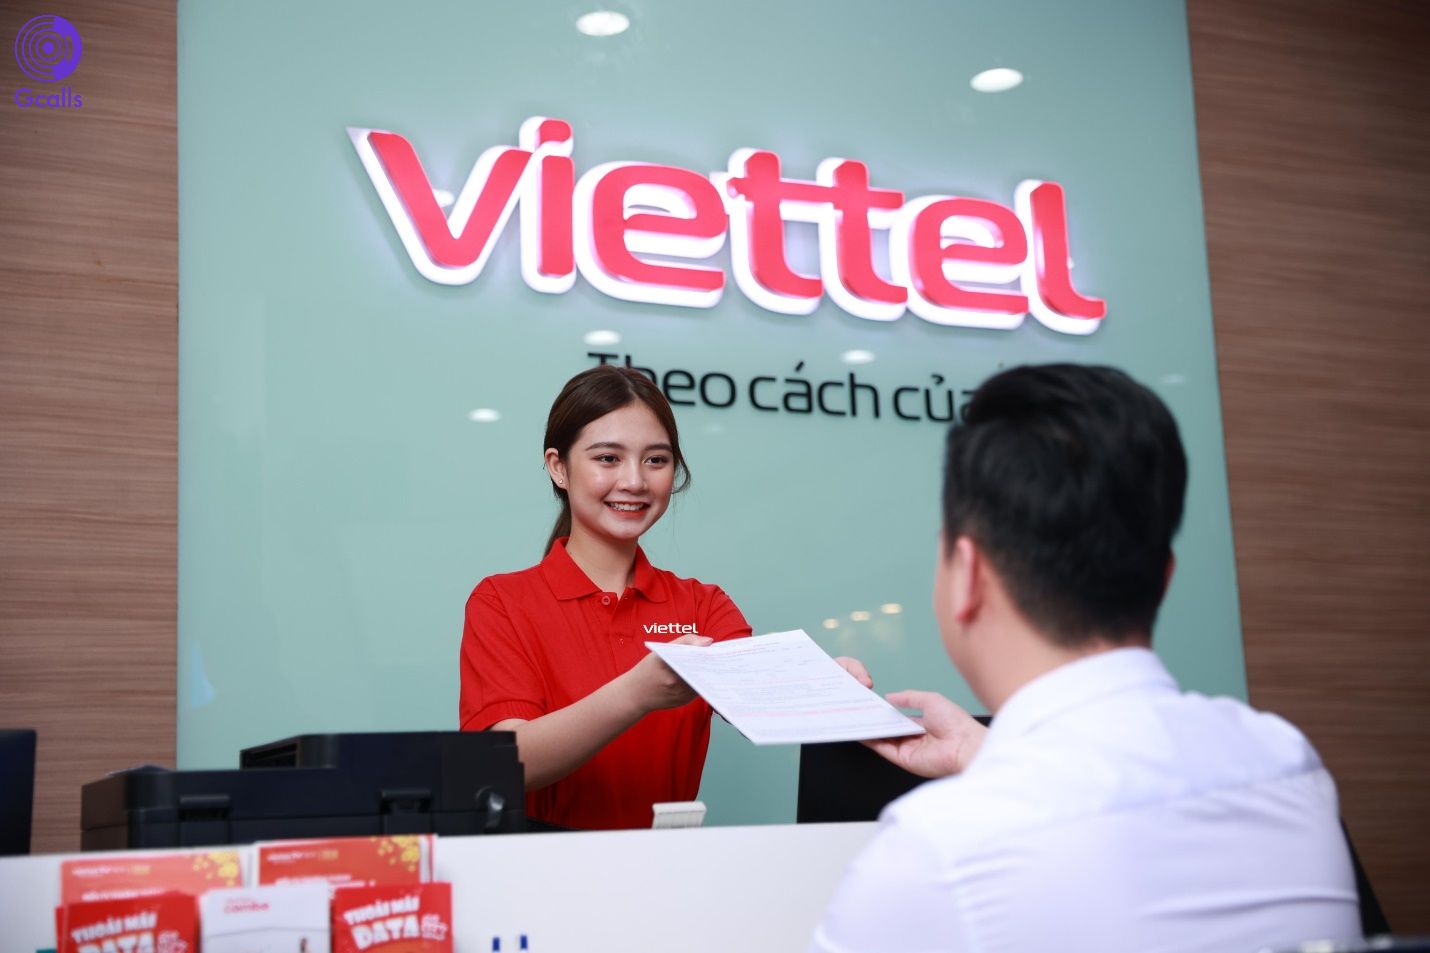 Nhà mạng Viettel đang chiếm khoảng 55% số người dùng viễn thông tại Việt Nam